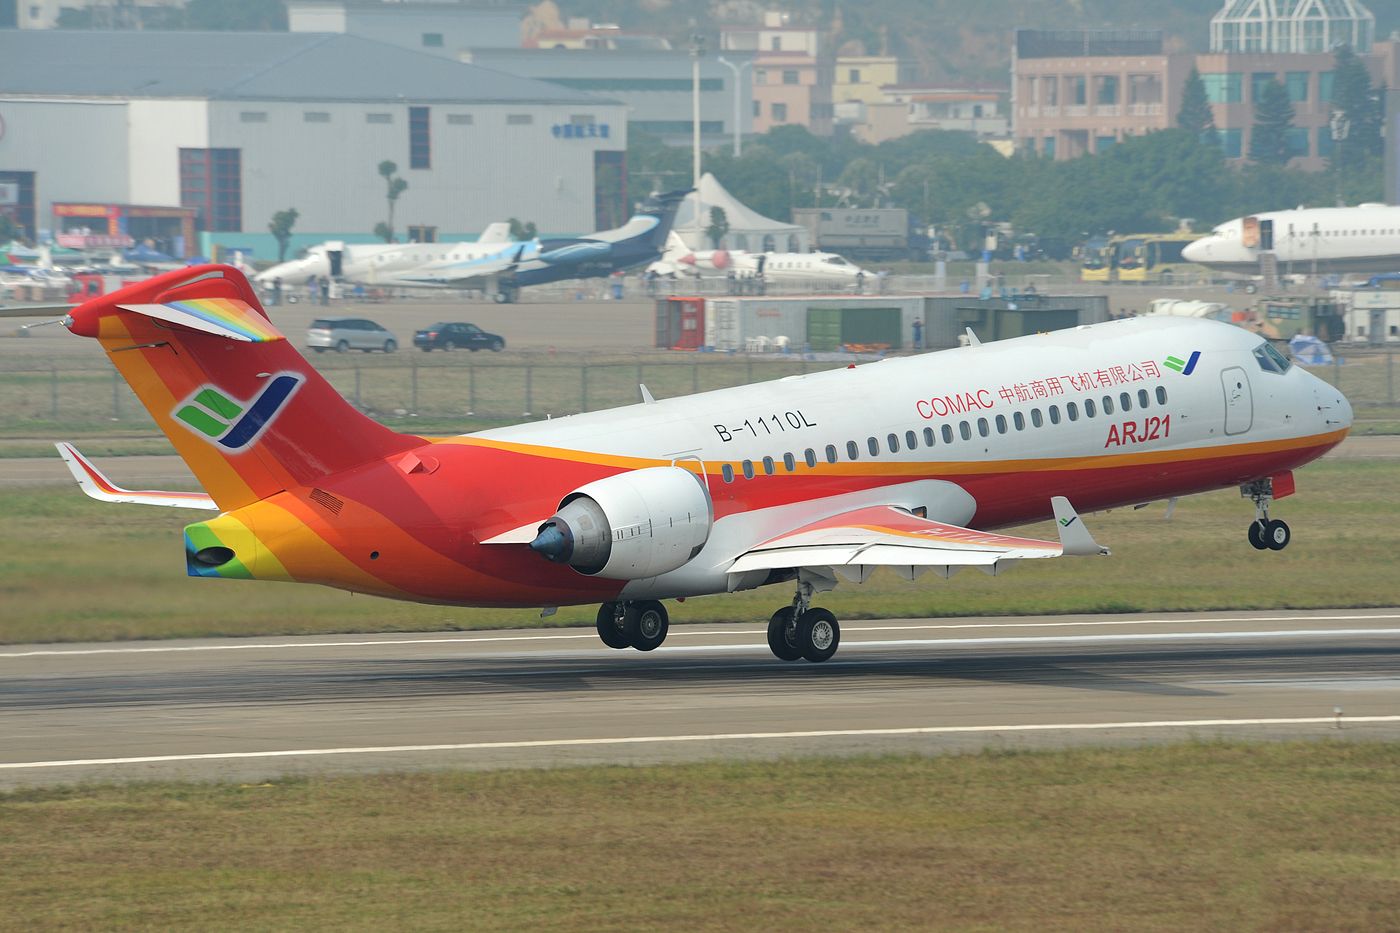 La Comac livre son premier avion régional à Chengdu Airlines